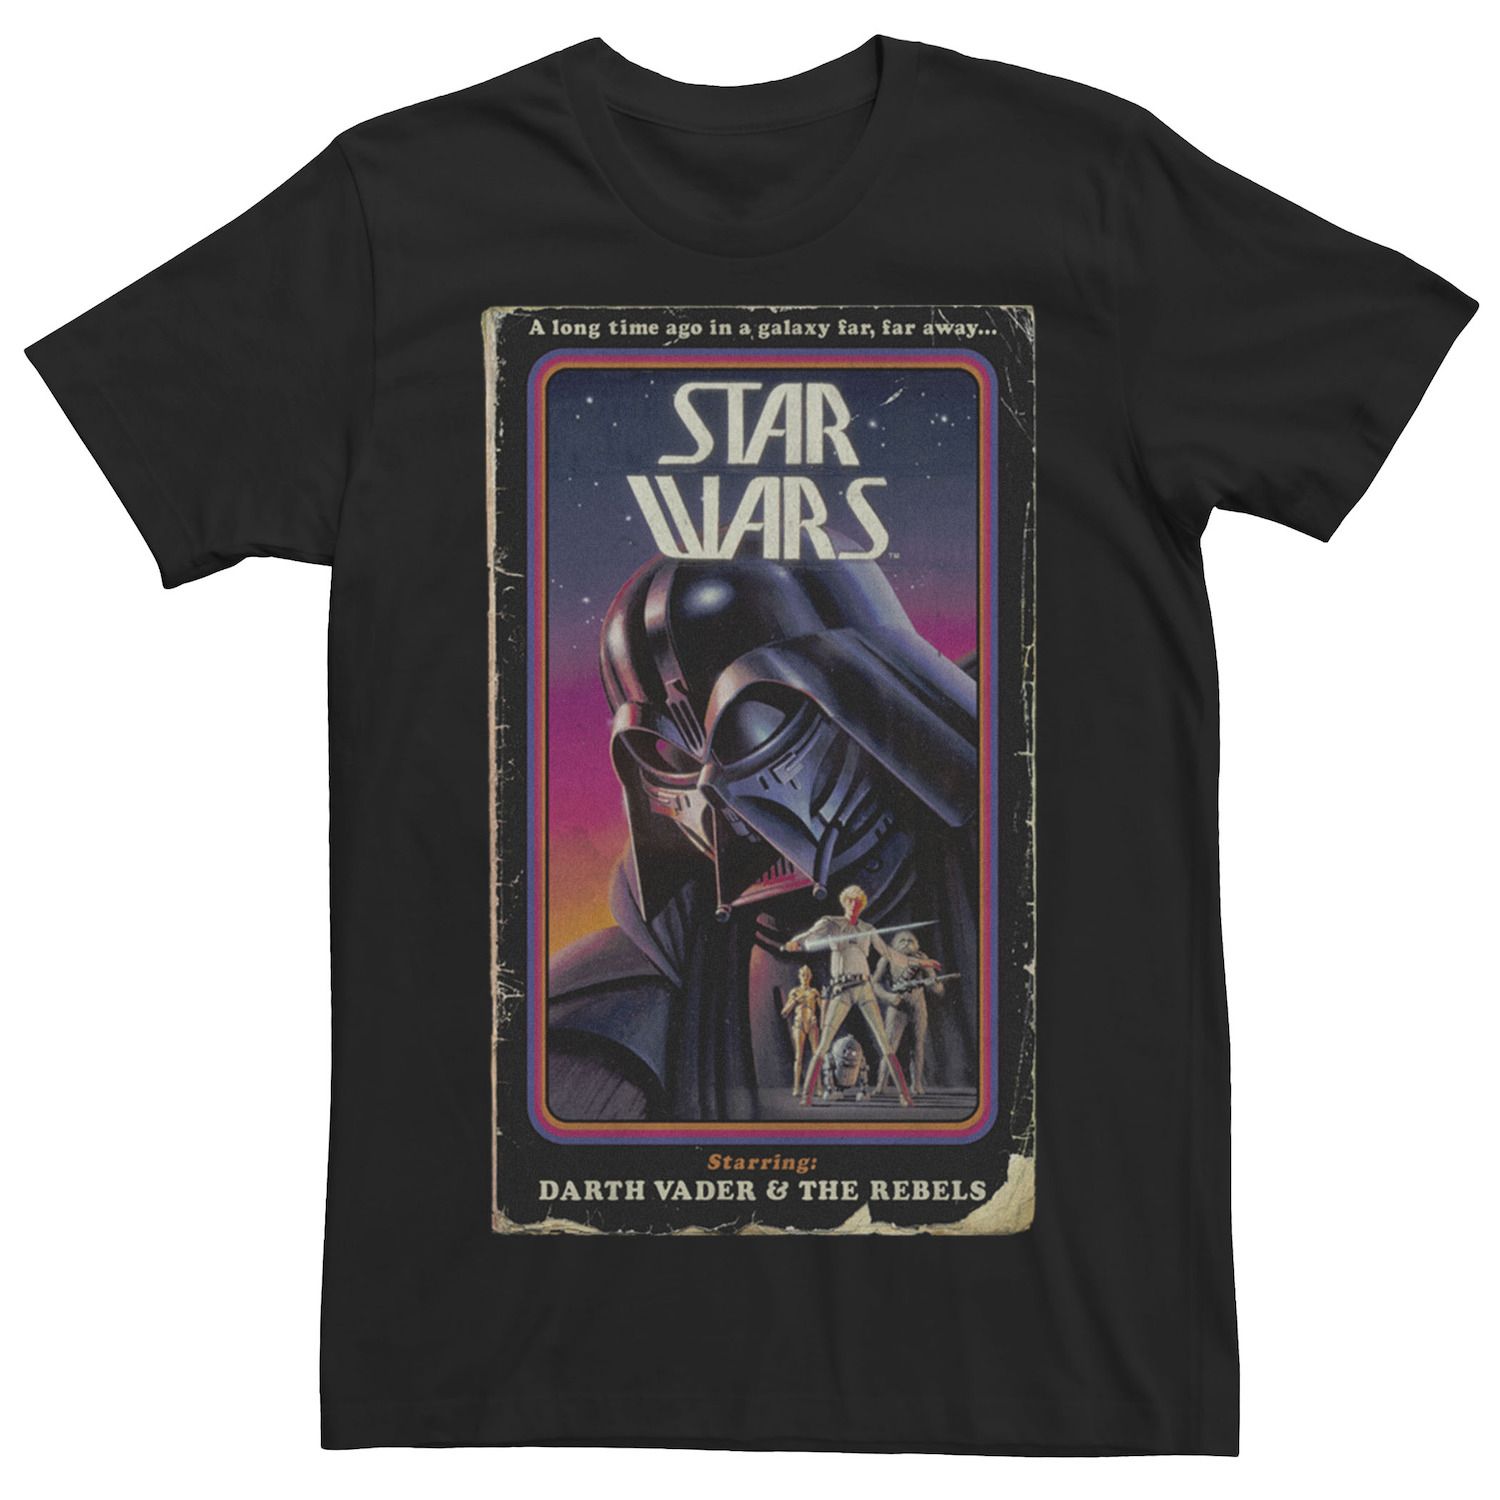 Мужская винтажная футболка с графическим принтом «Звездные войны» Star Wars футболка мужская с принтом тарелок забавная тенниска с графическим принтом винтажная майка